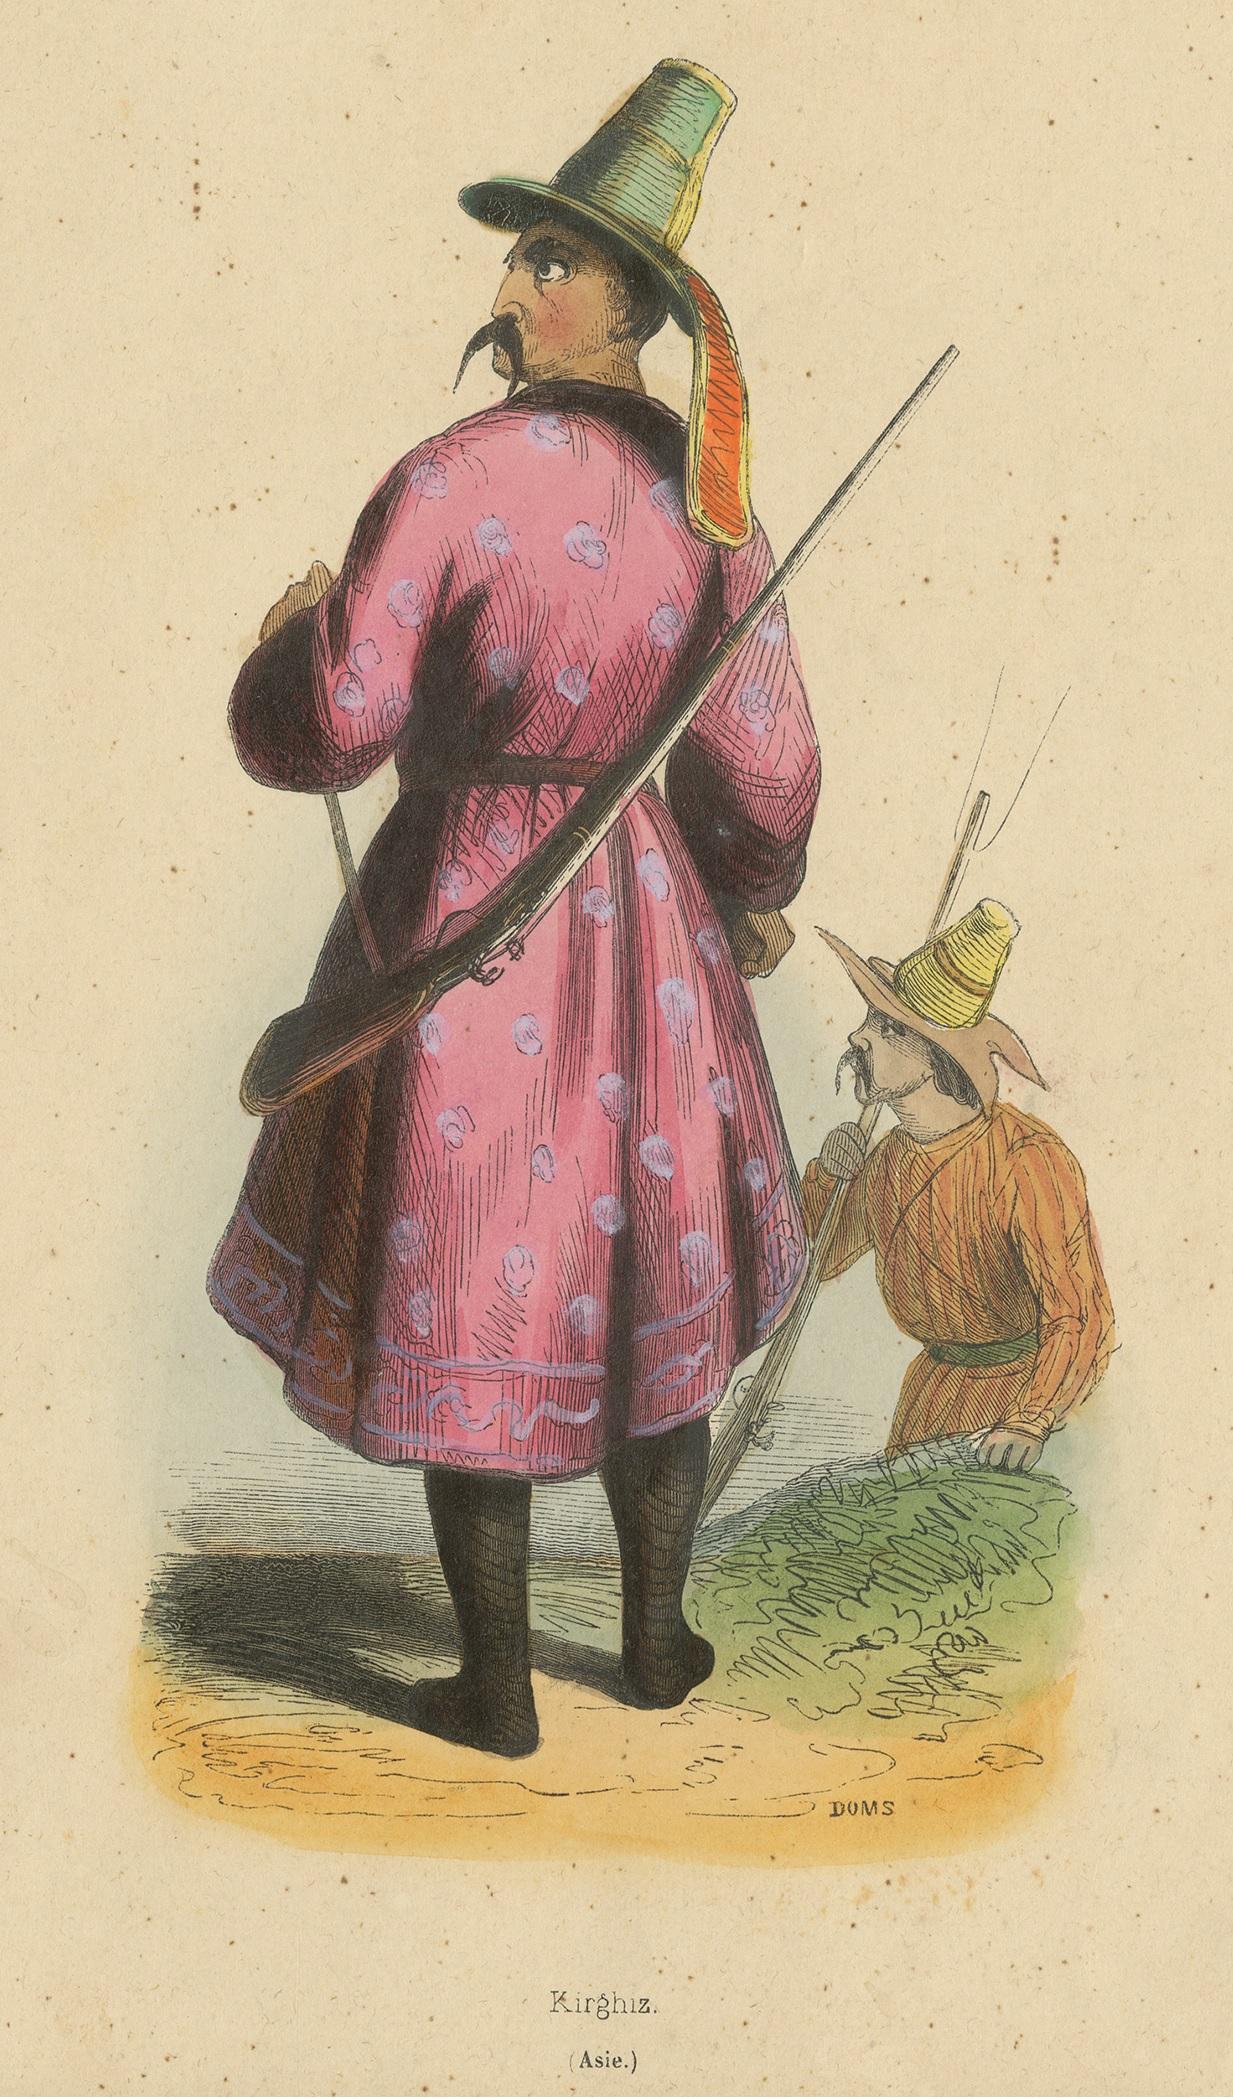 Antique costume print titled 'Kirghiz'. Original antique print of a Kyrgyz man. This print originates from 'Moeurs, usages et costumes de tous les peuples du monde' by Auguste Wahlen.